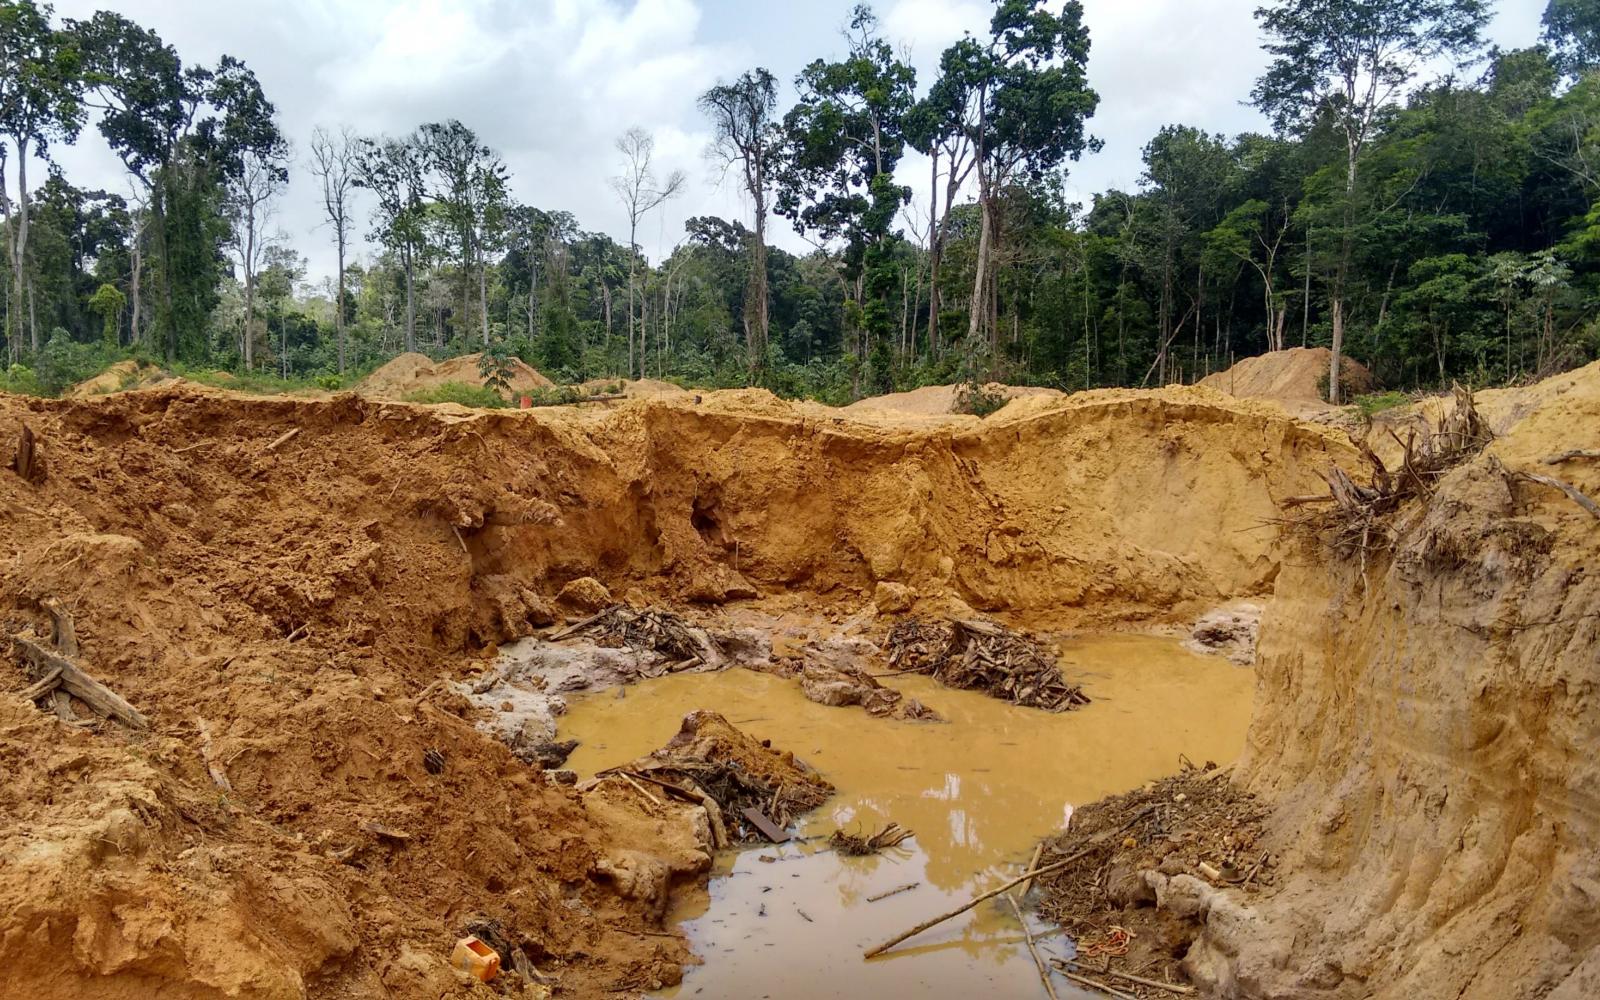 Les garimpeiros (adeptes des pratiques d'orpaillage illégal) contribuent fortement à la déforestation de l'Amazonie (Guyane française et Suriname)